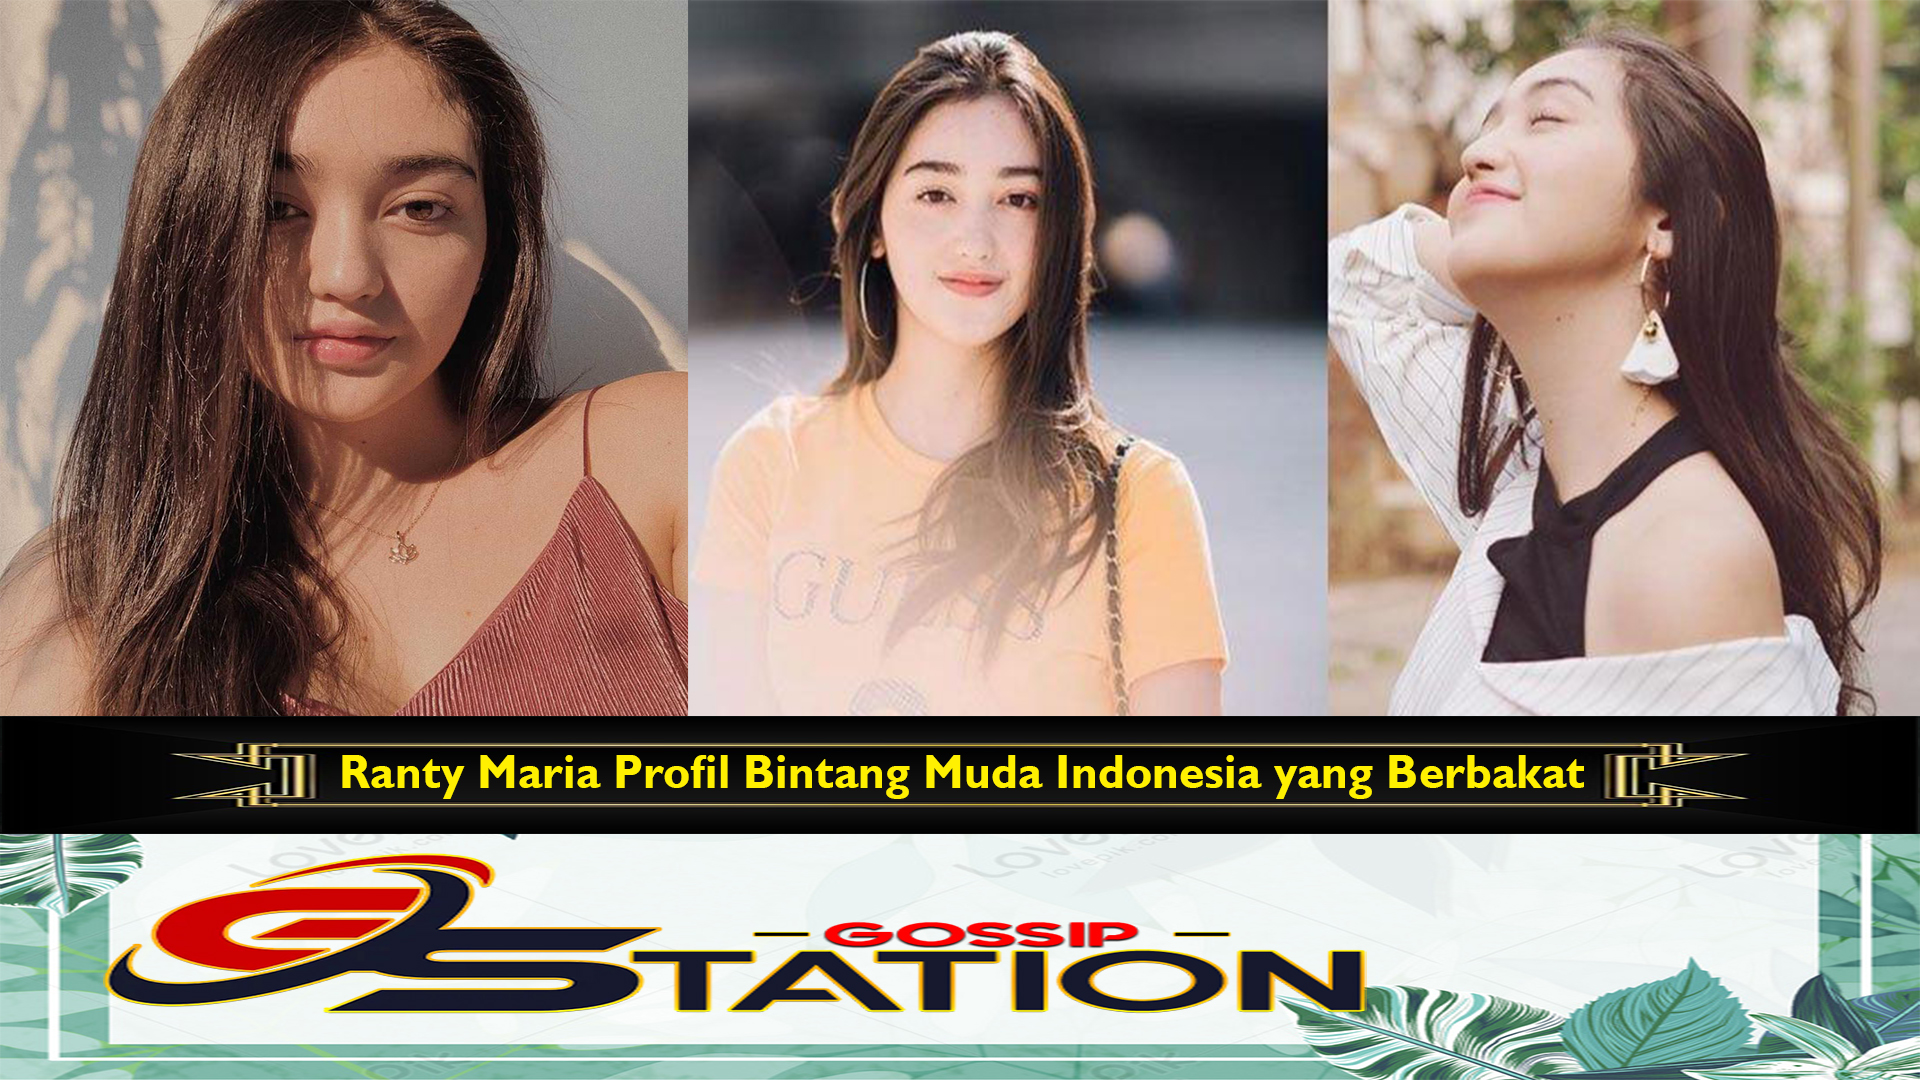 Ranty Maria Profil Bintang Muda Indonesia yang Berbakat